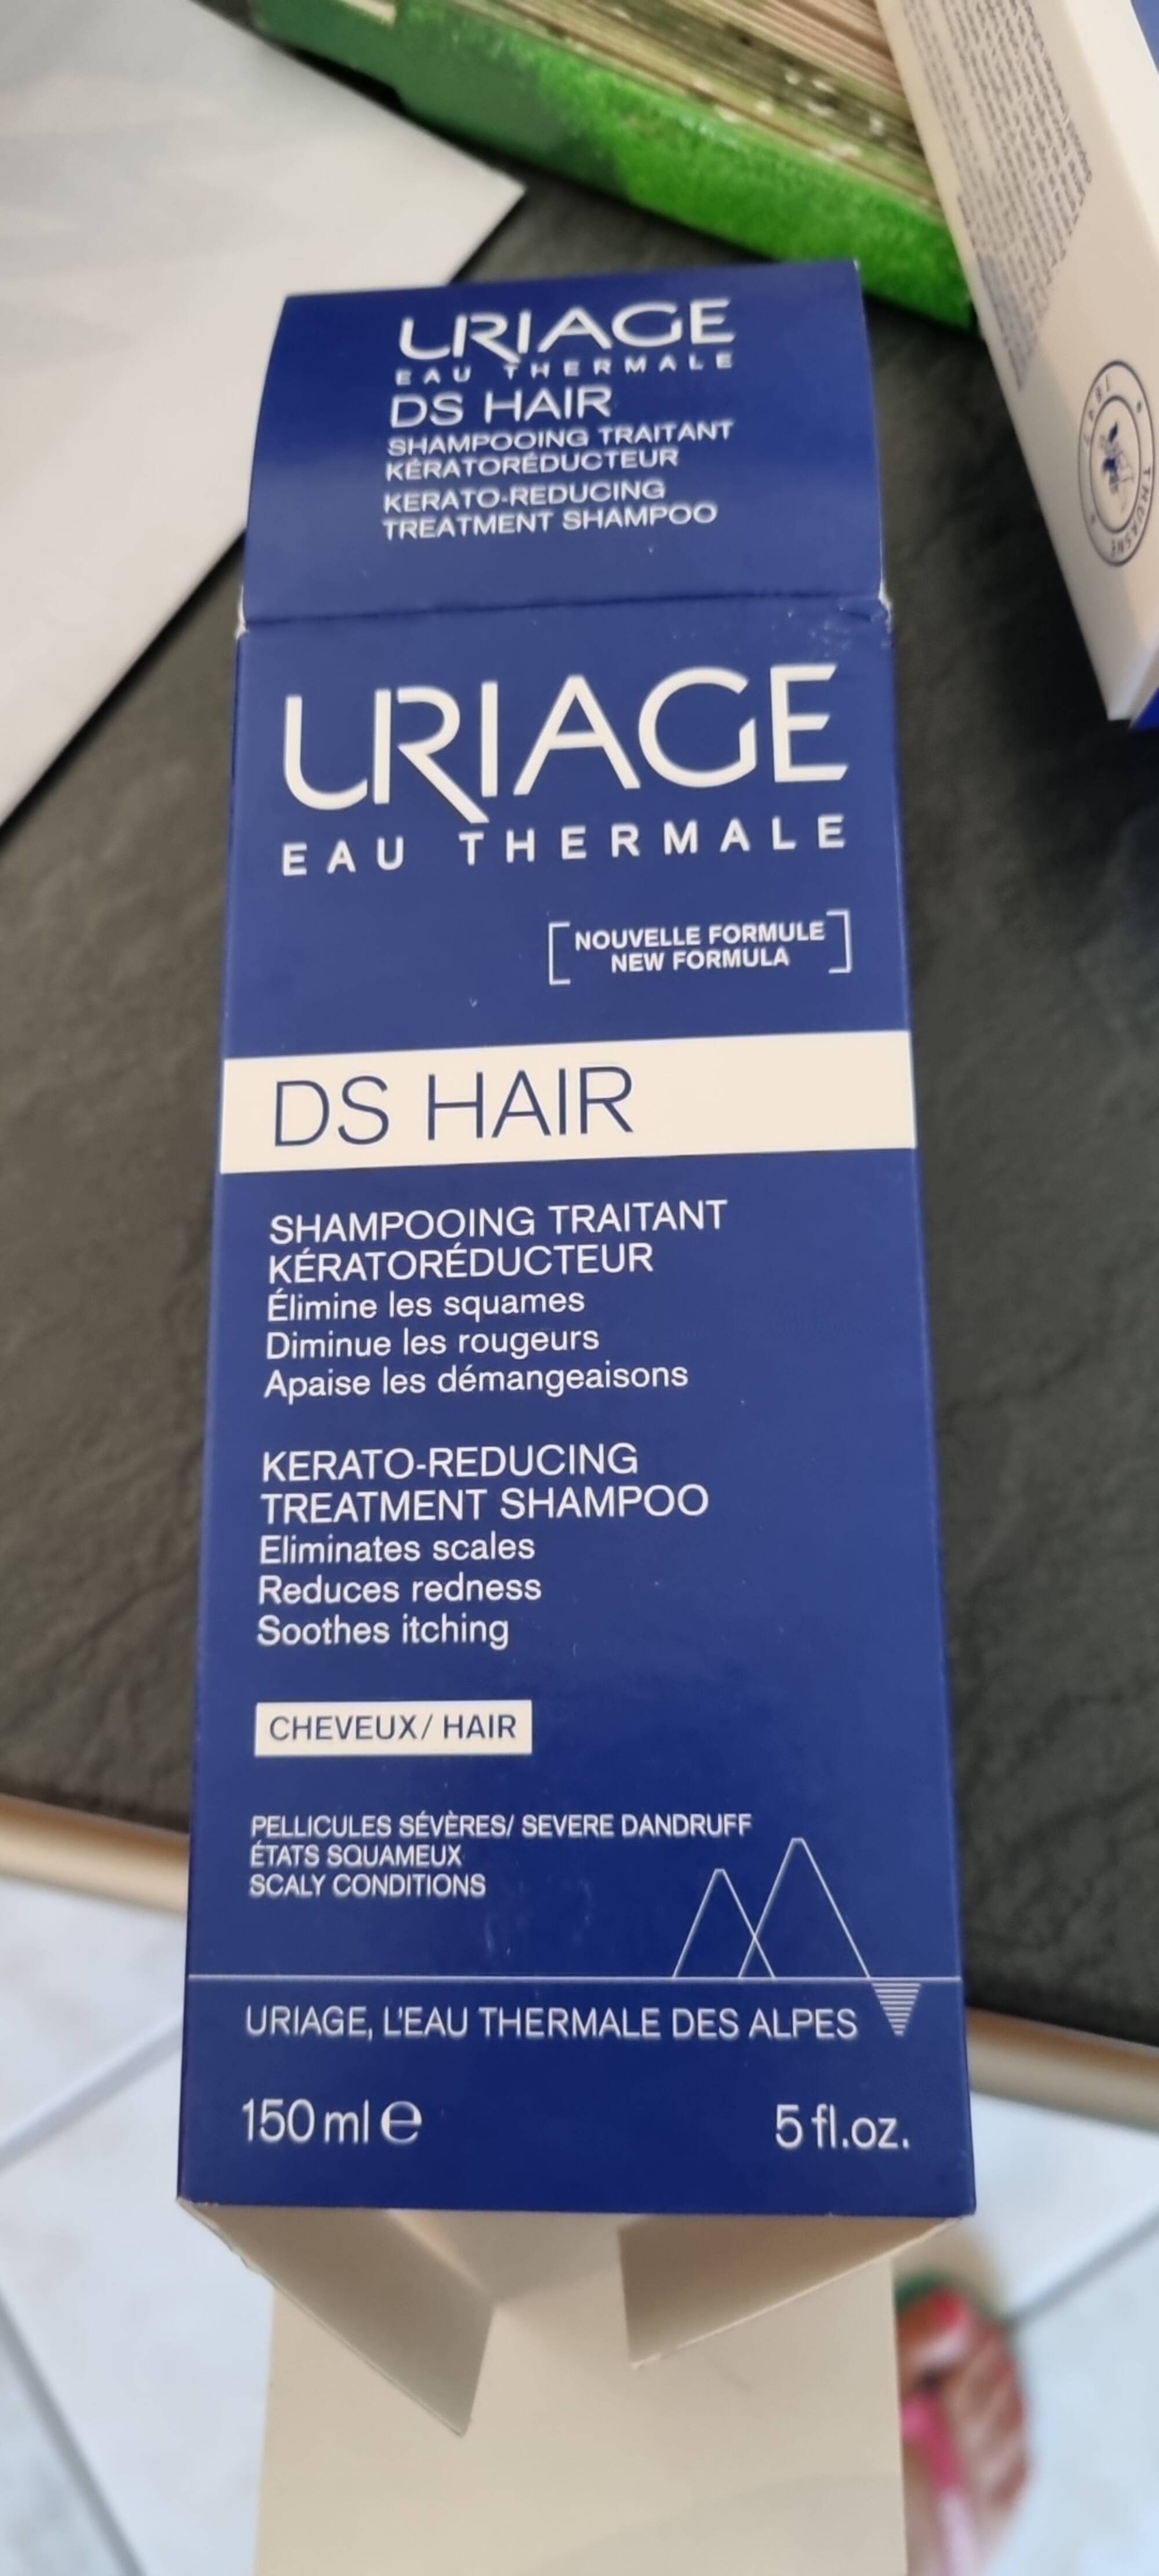 URIAGE - DS hair - Shampooing traitant kératoréducteur